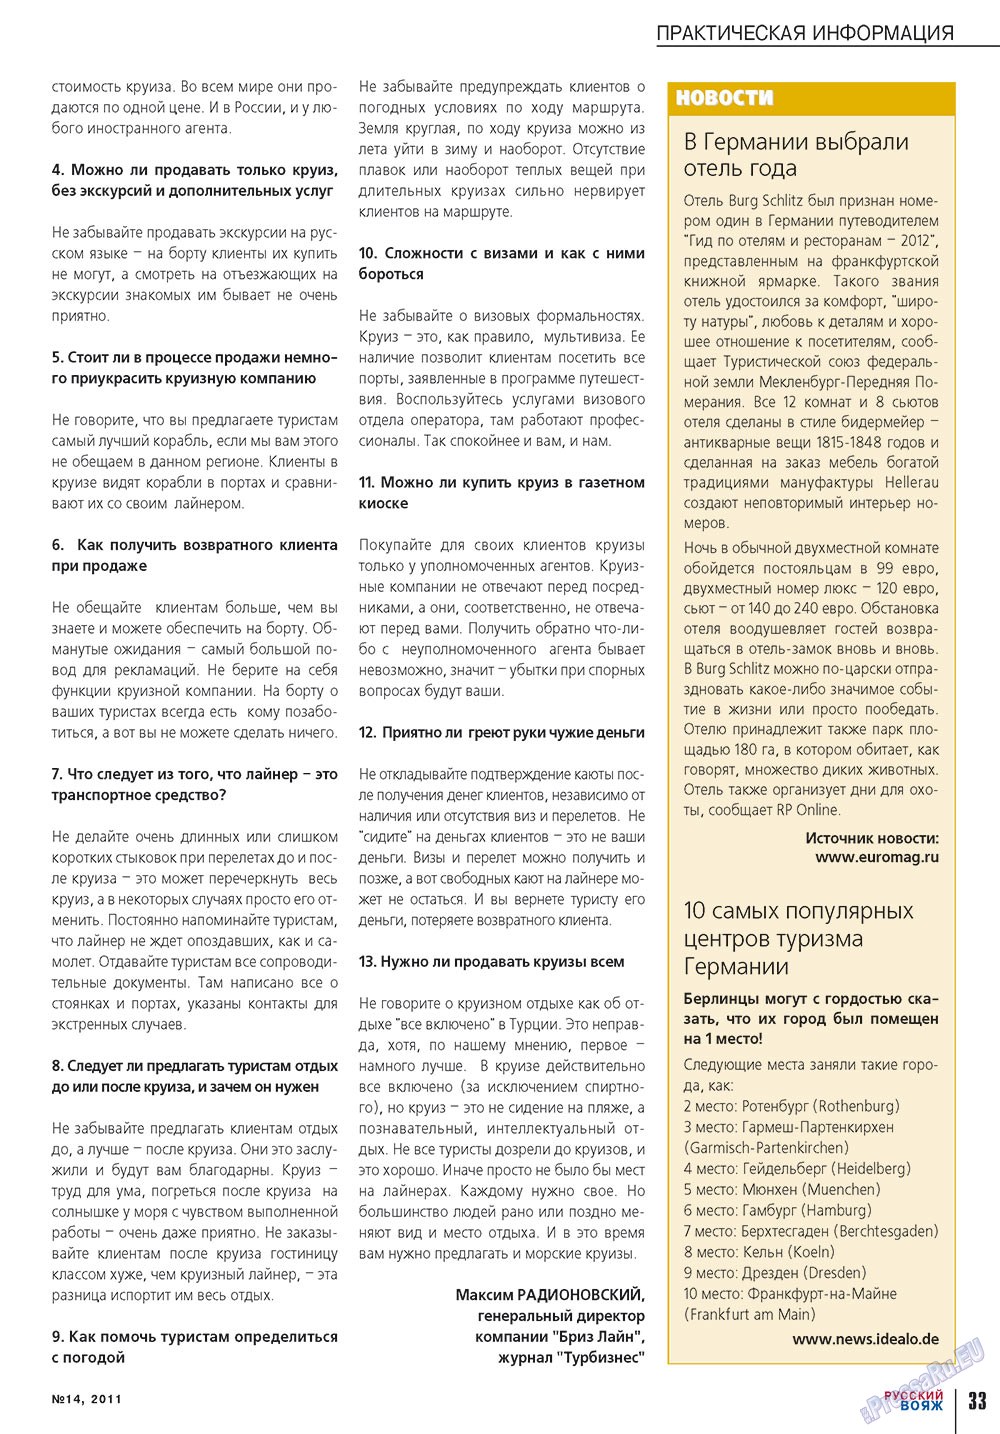 Русский вояж, журнал. 2011 №14 стр.33